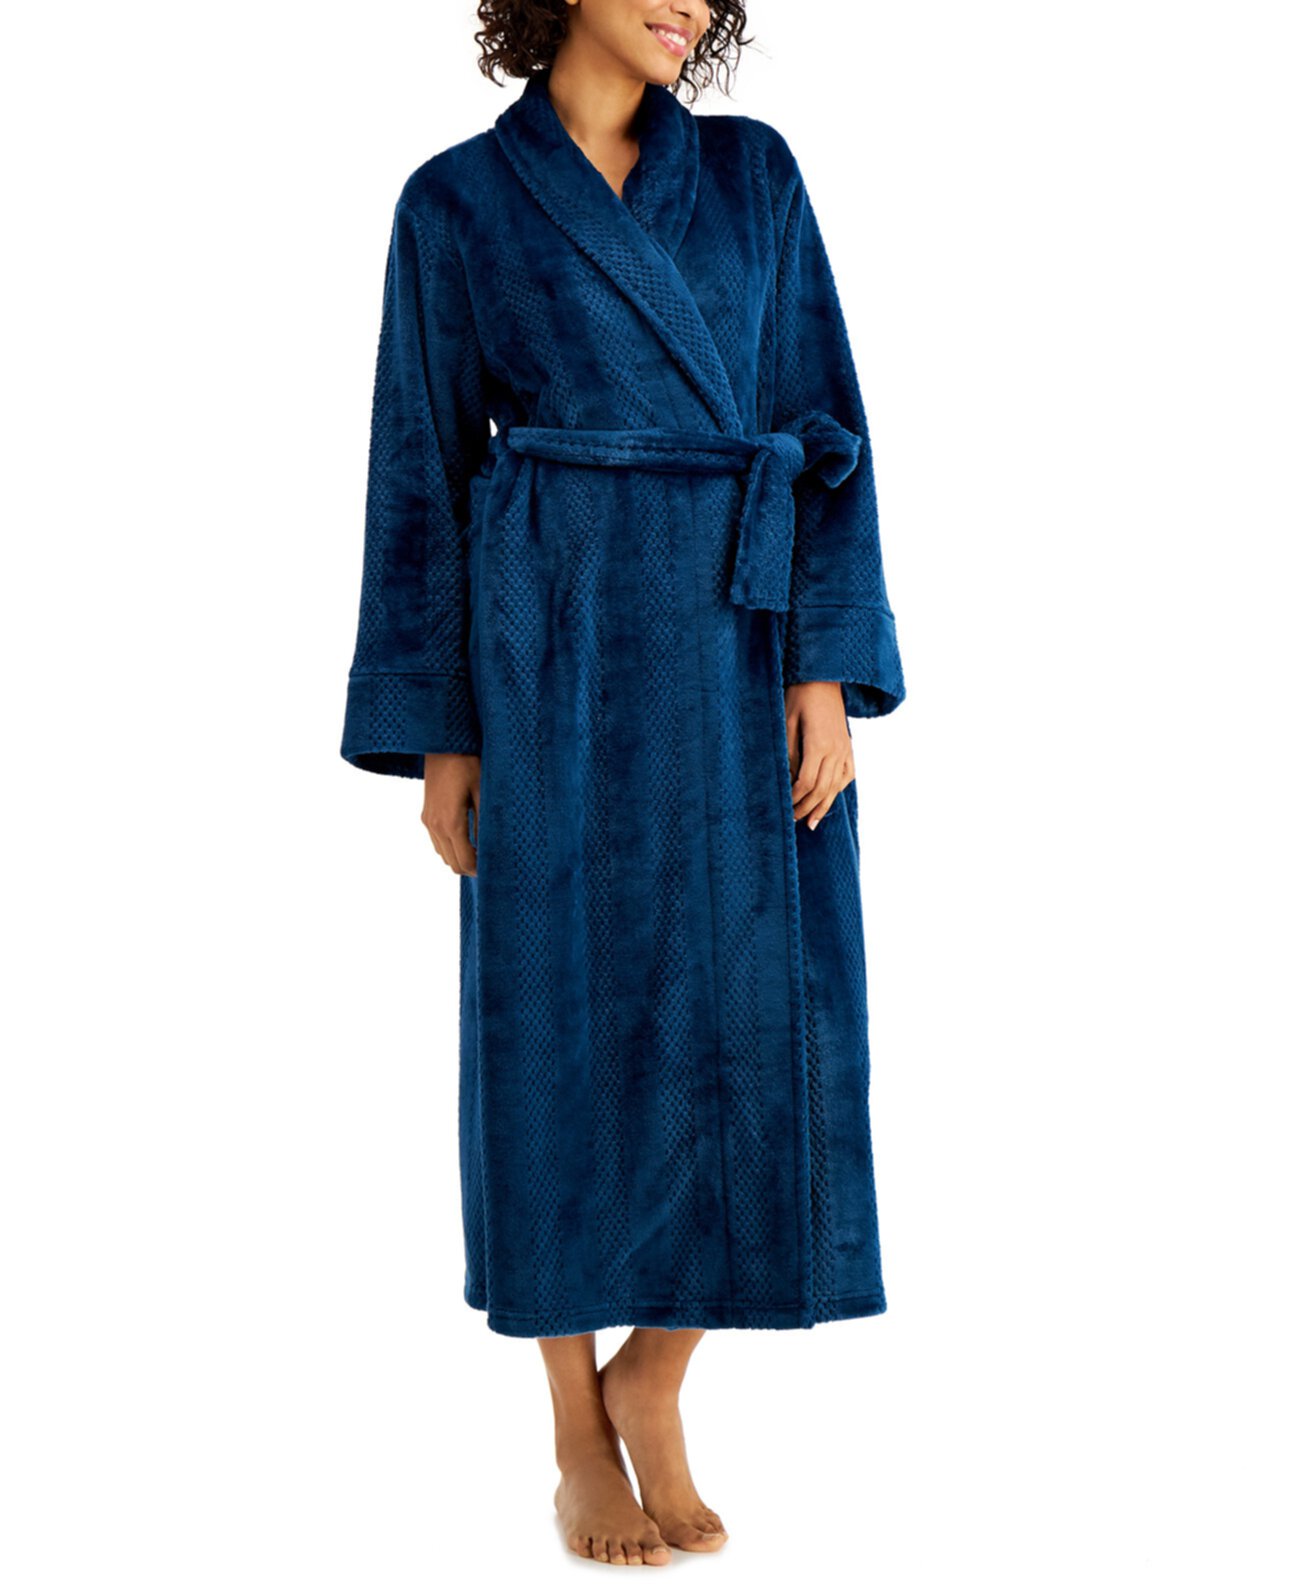 Текстурированный уютный халат в длинную полоску, созданный для Macy's Charter Club